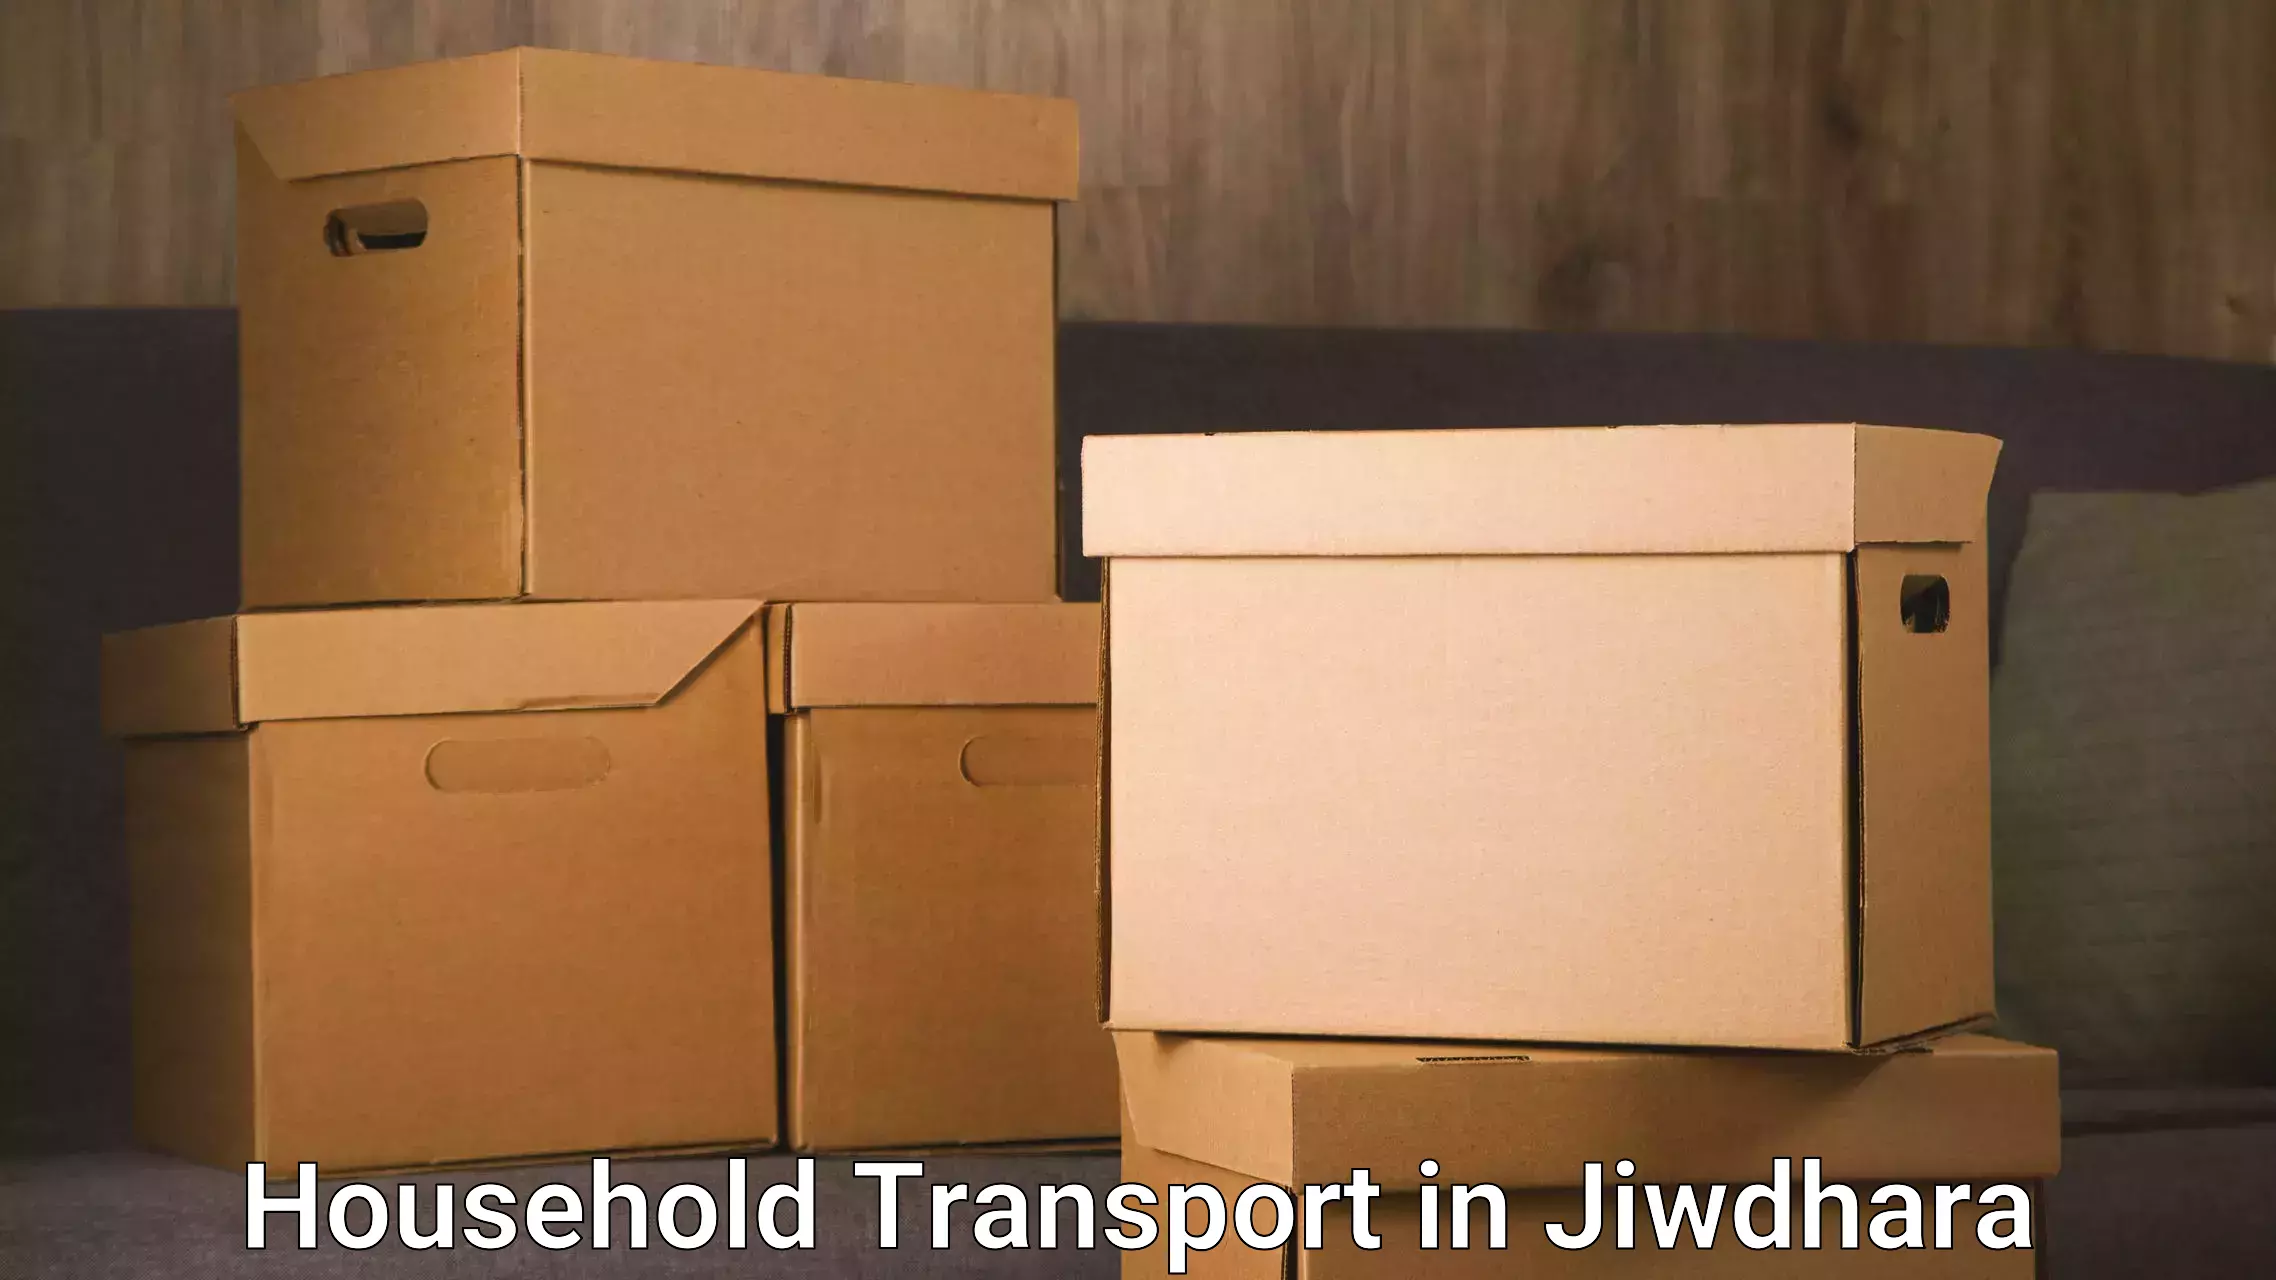 Quality furniture transport in Jiwdhara